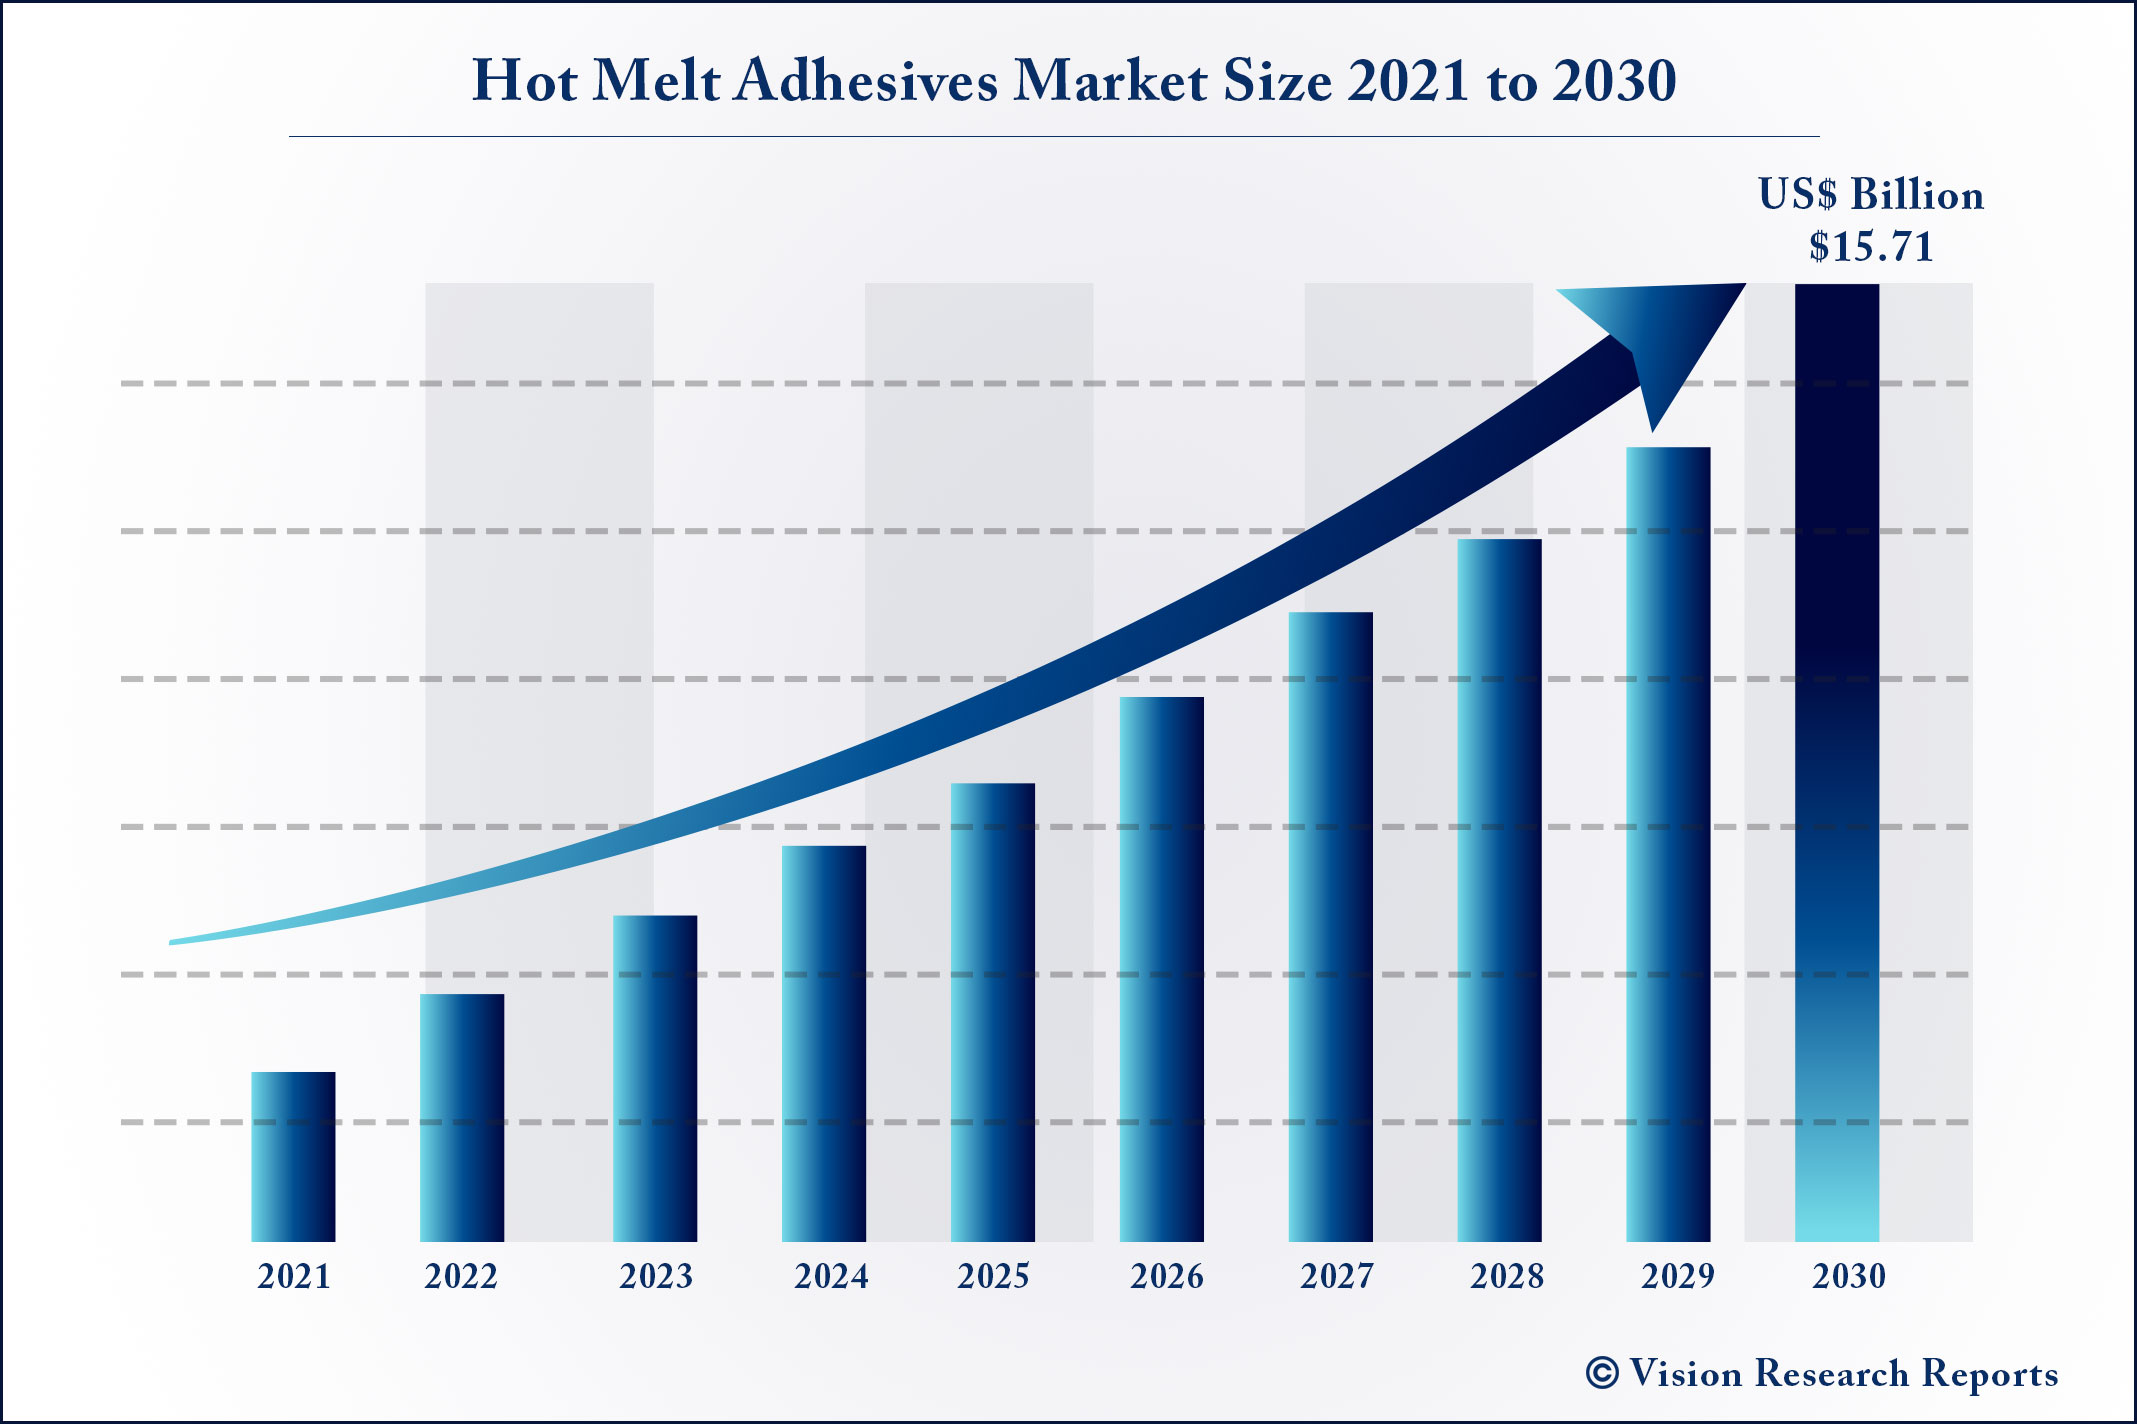  Hot Melt Adhesives Market Size 2021 to 2030